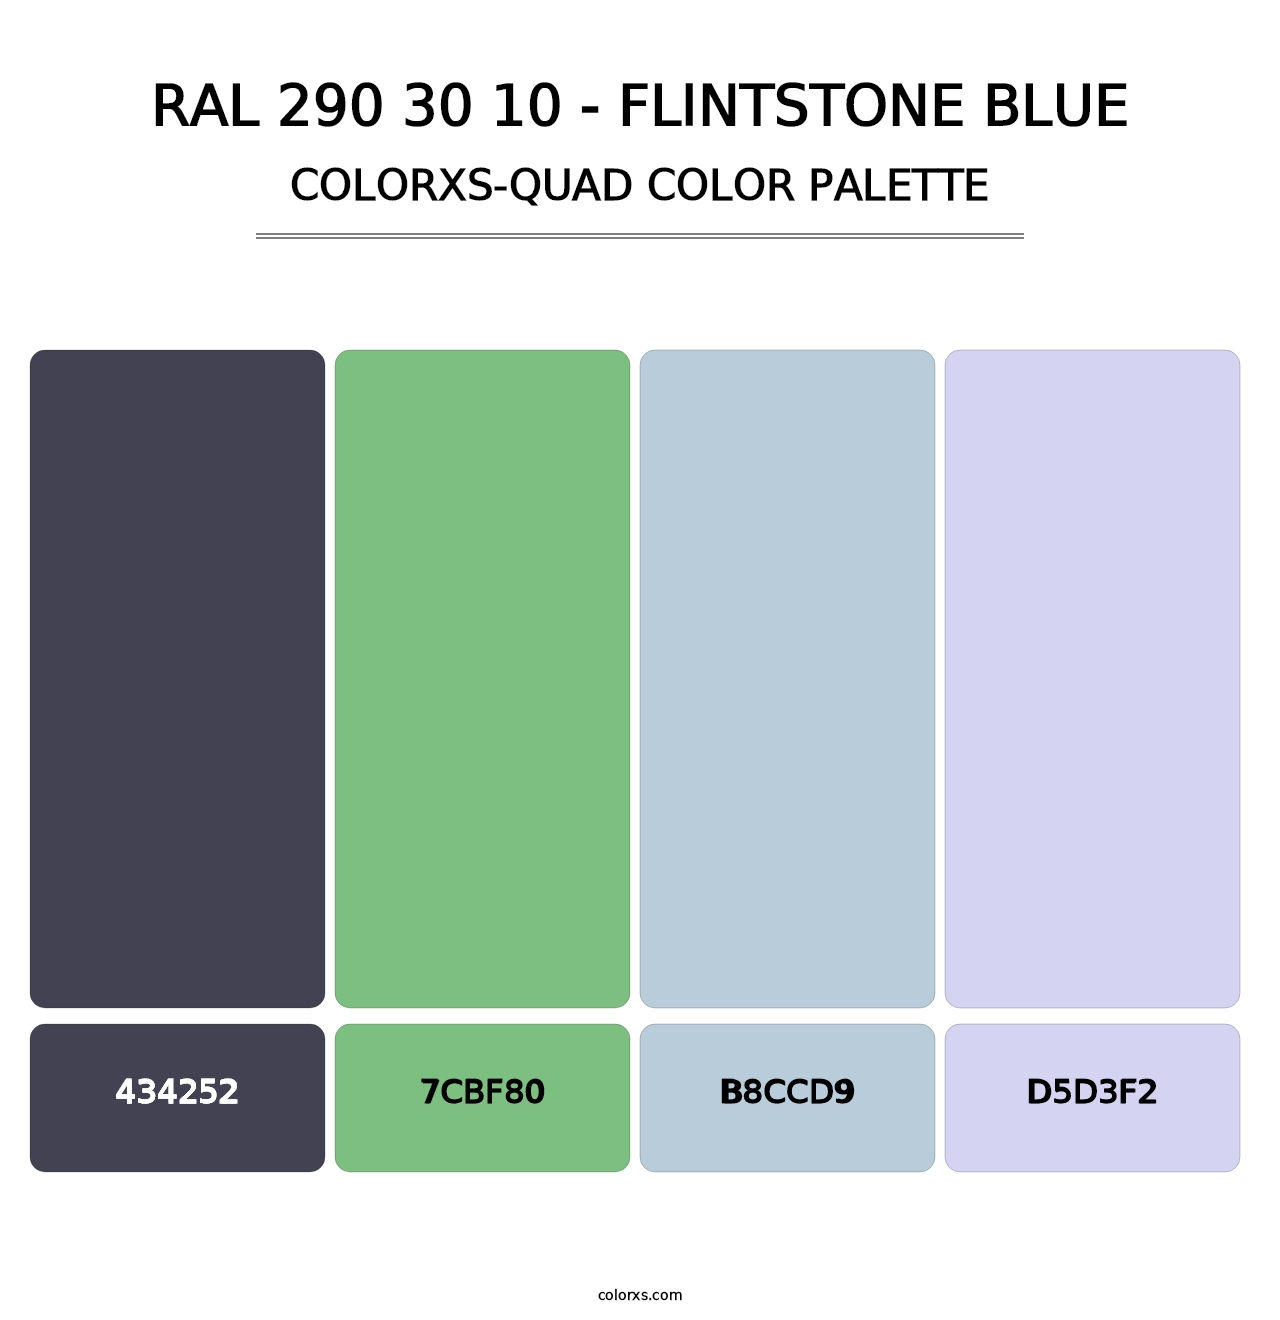 RAL 290 30 10 - Flintstone Blue - Colorxs Quad Palette